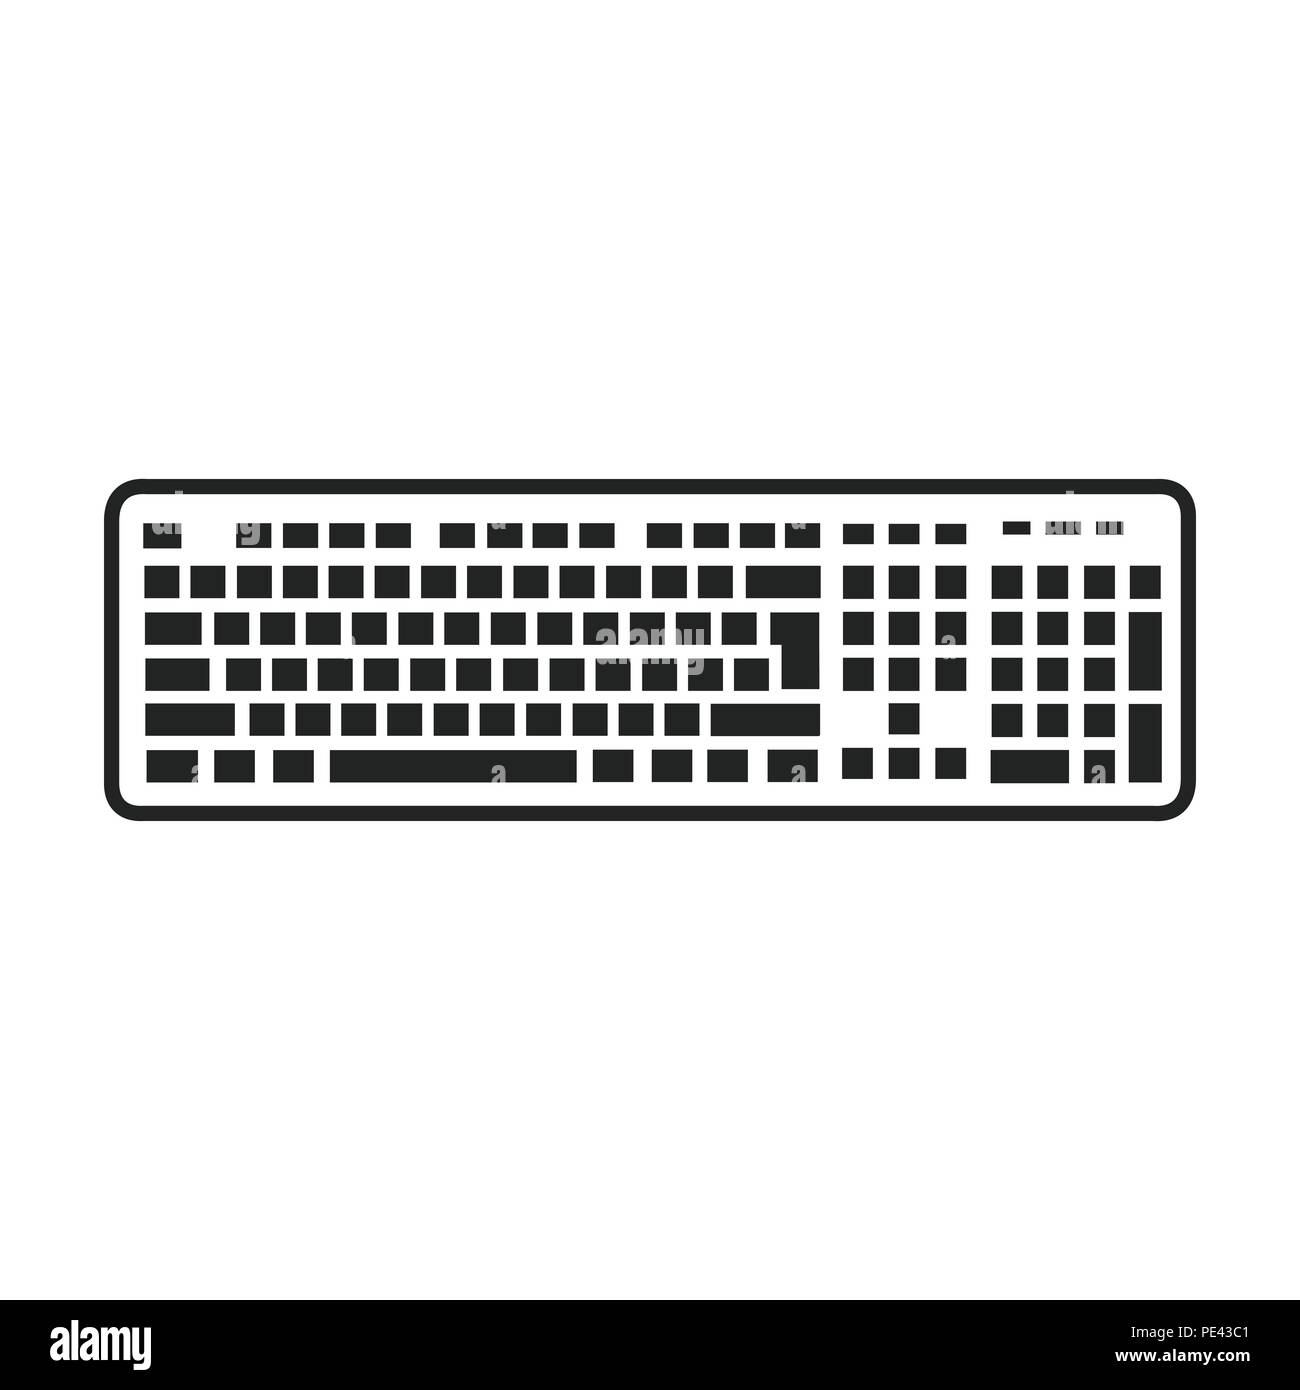 Details 135+ keyboard logo best